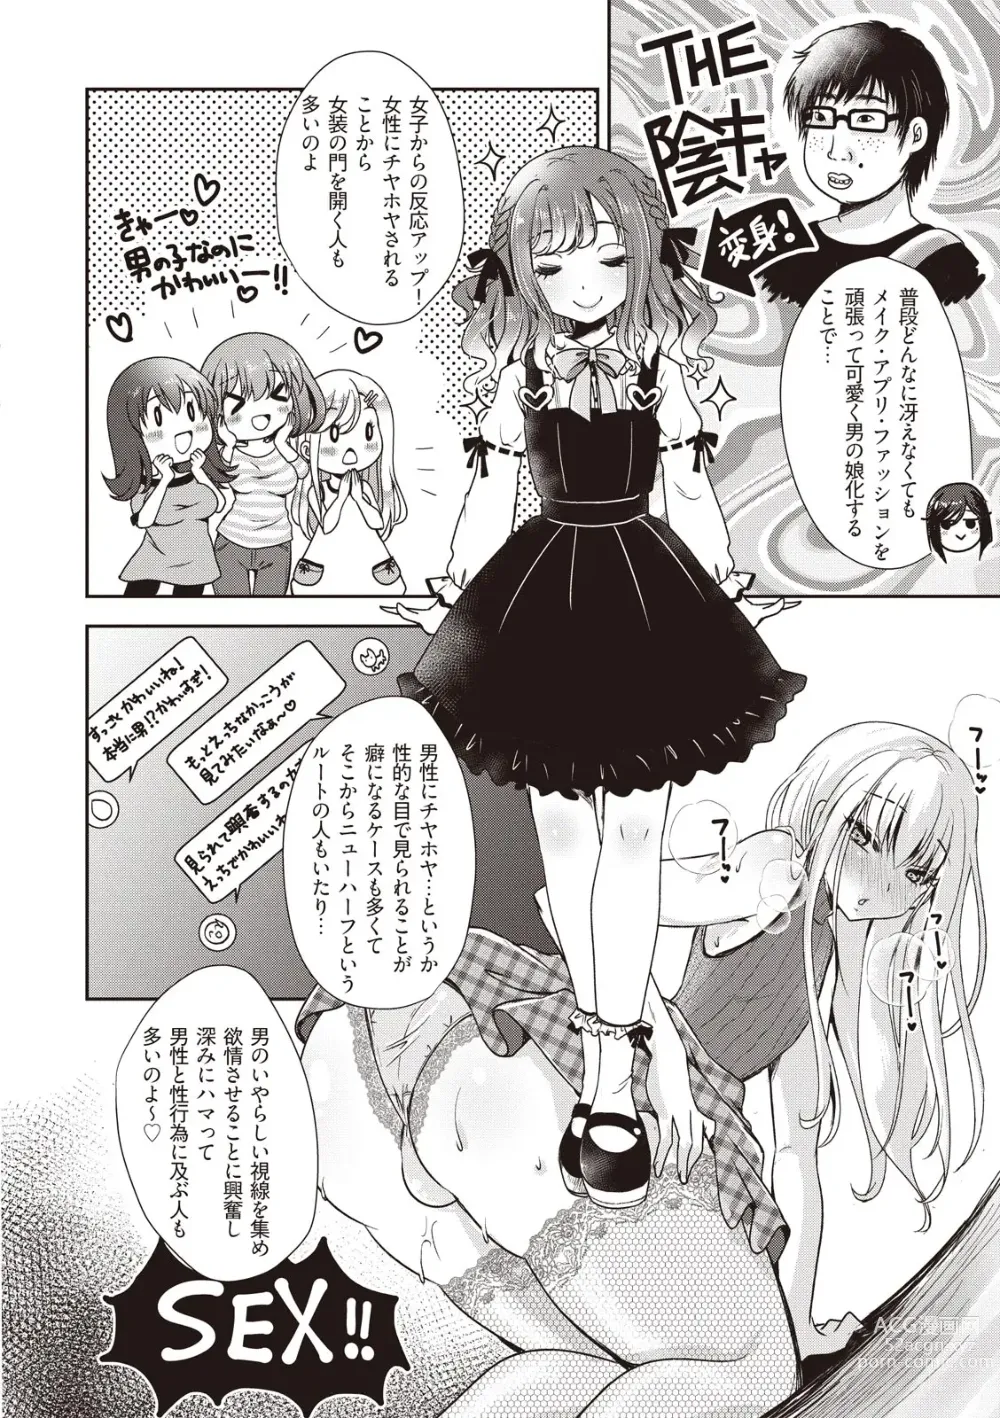 Page 10 of manga Manga de Furikaeru Otokonoko 10-nenshi